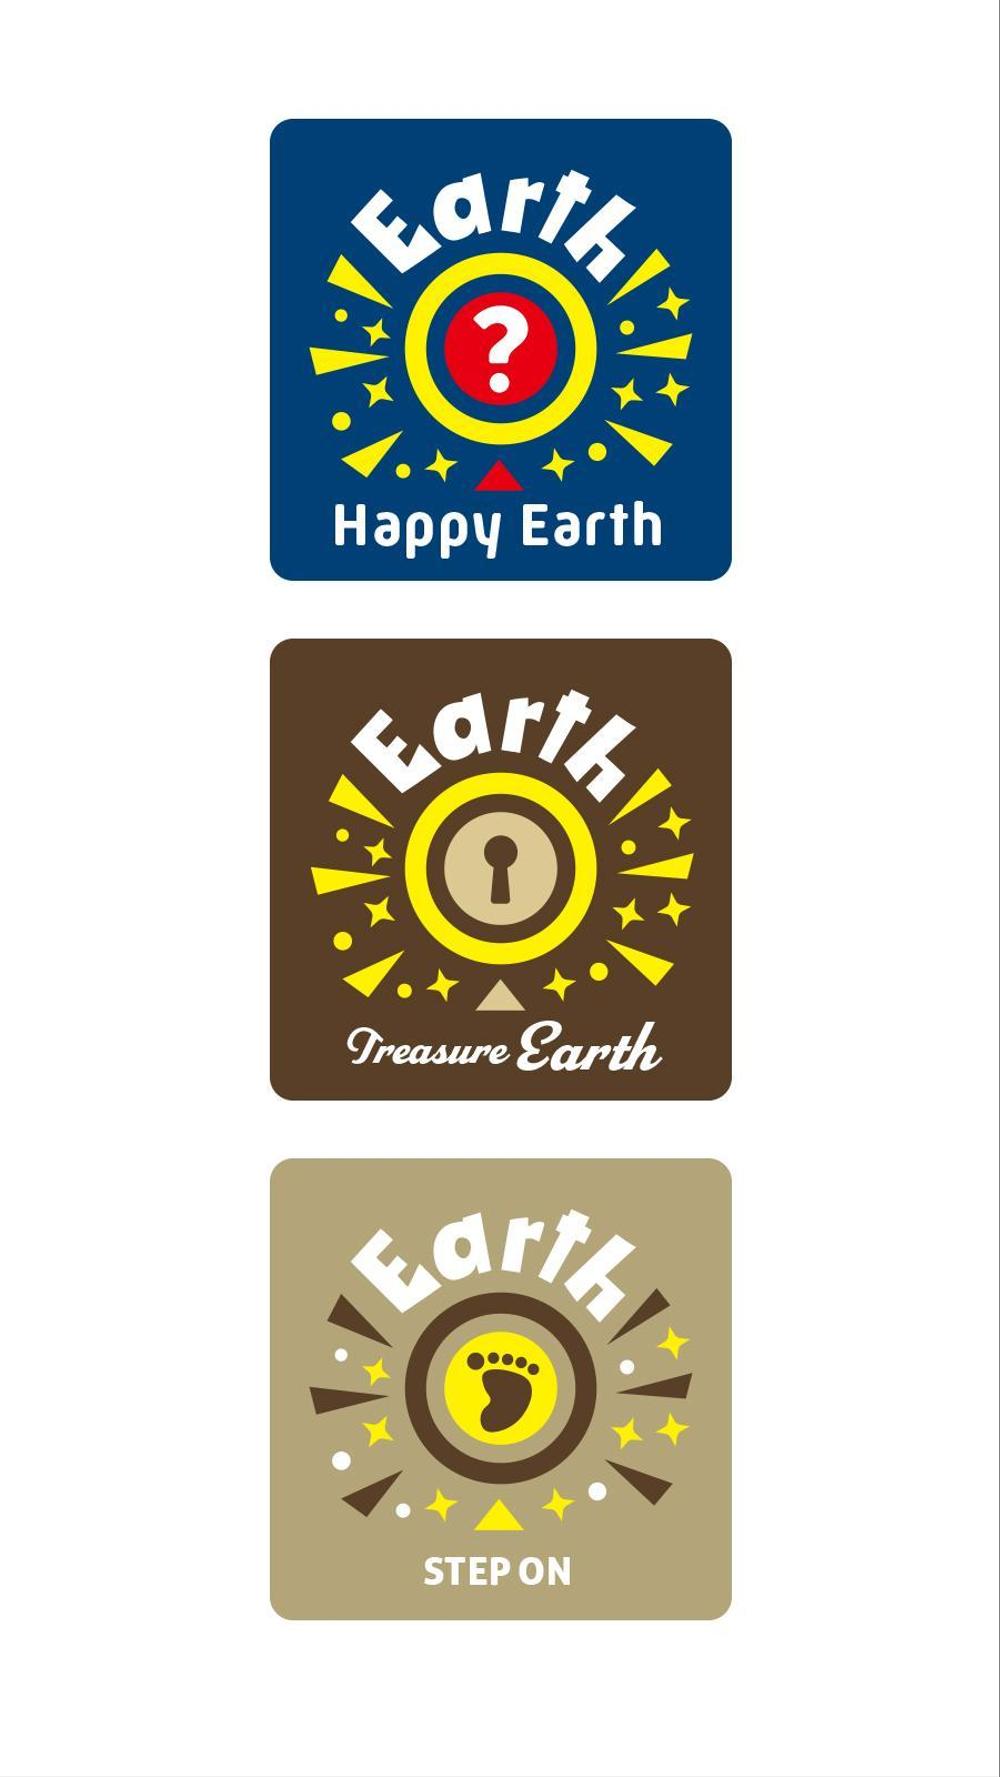 Earth_logo_1_A-part.jpg